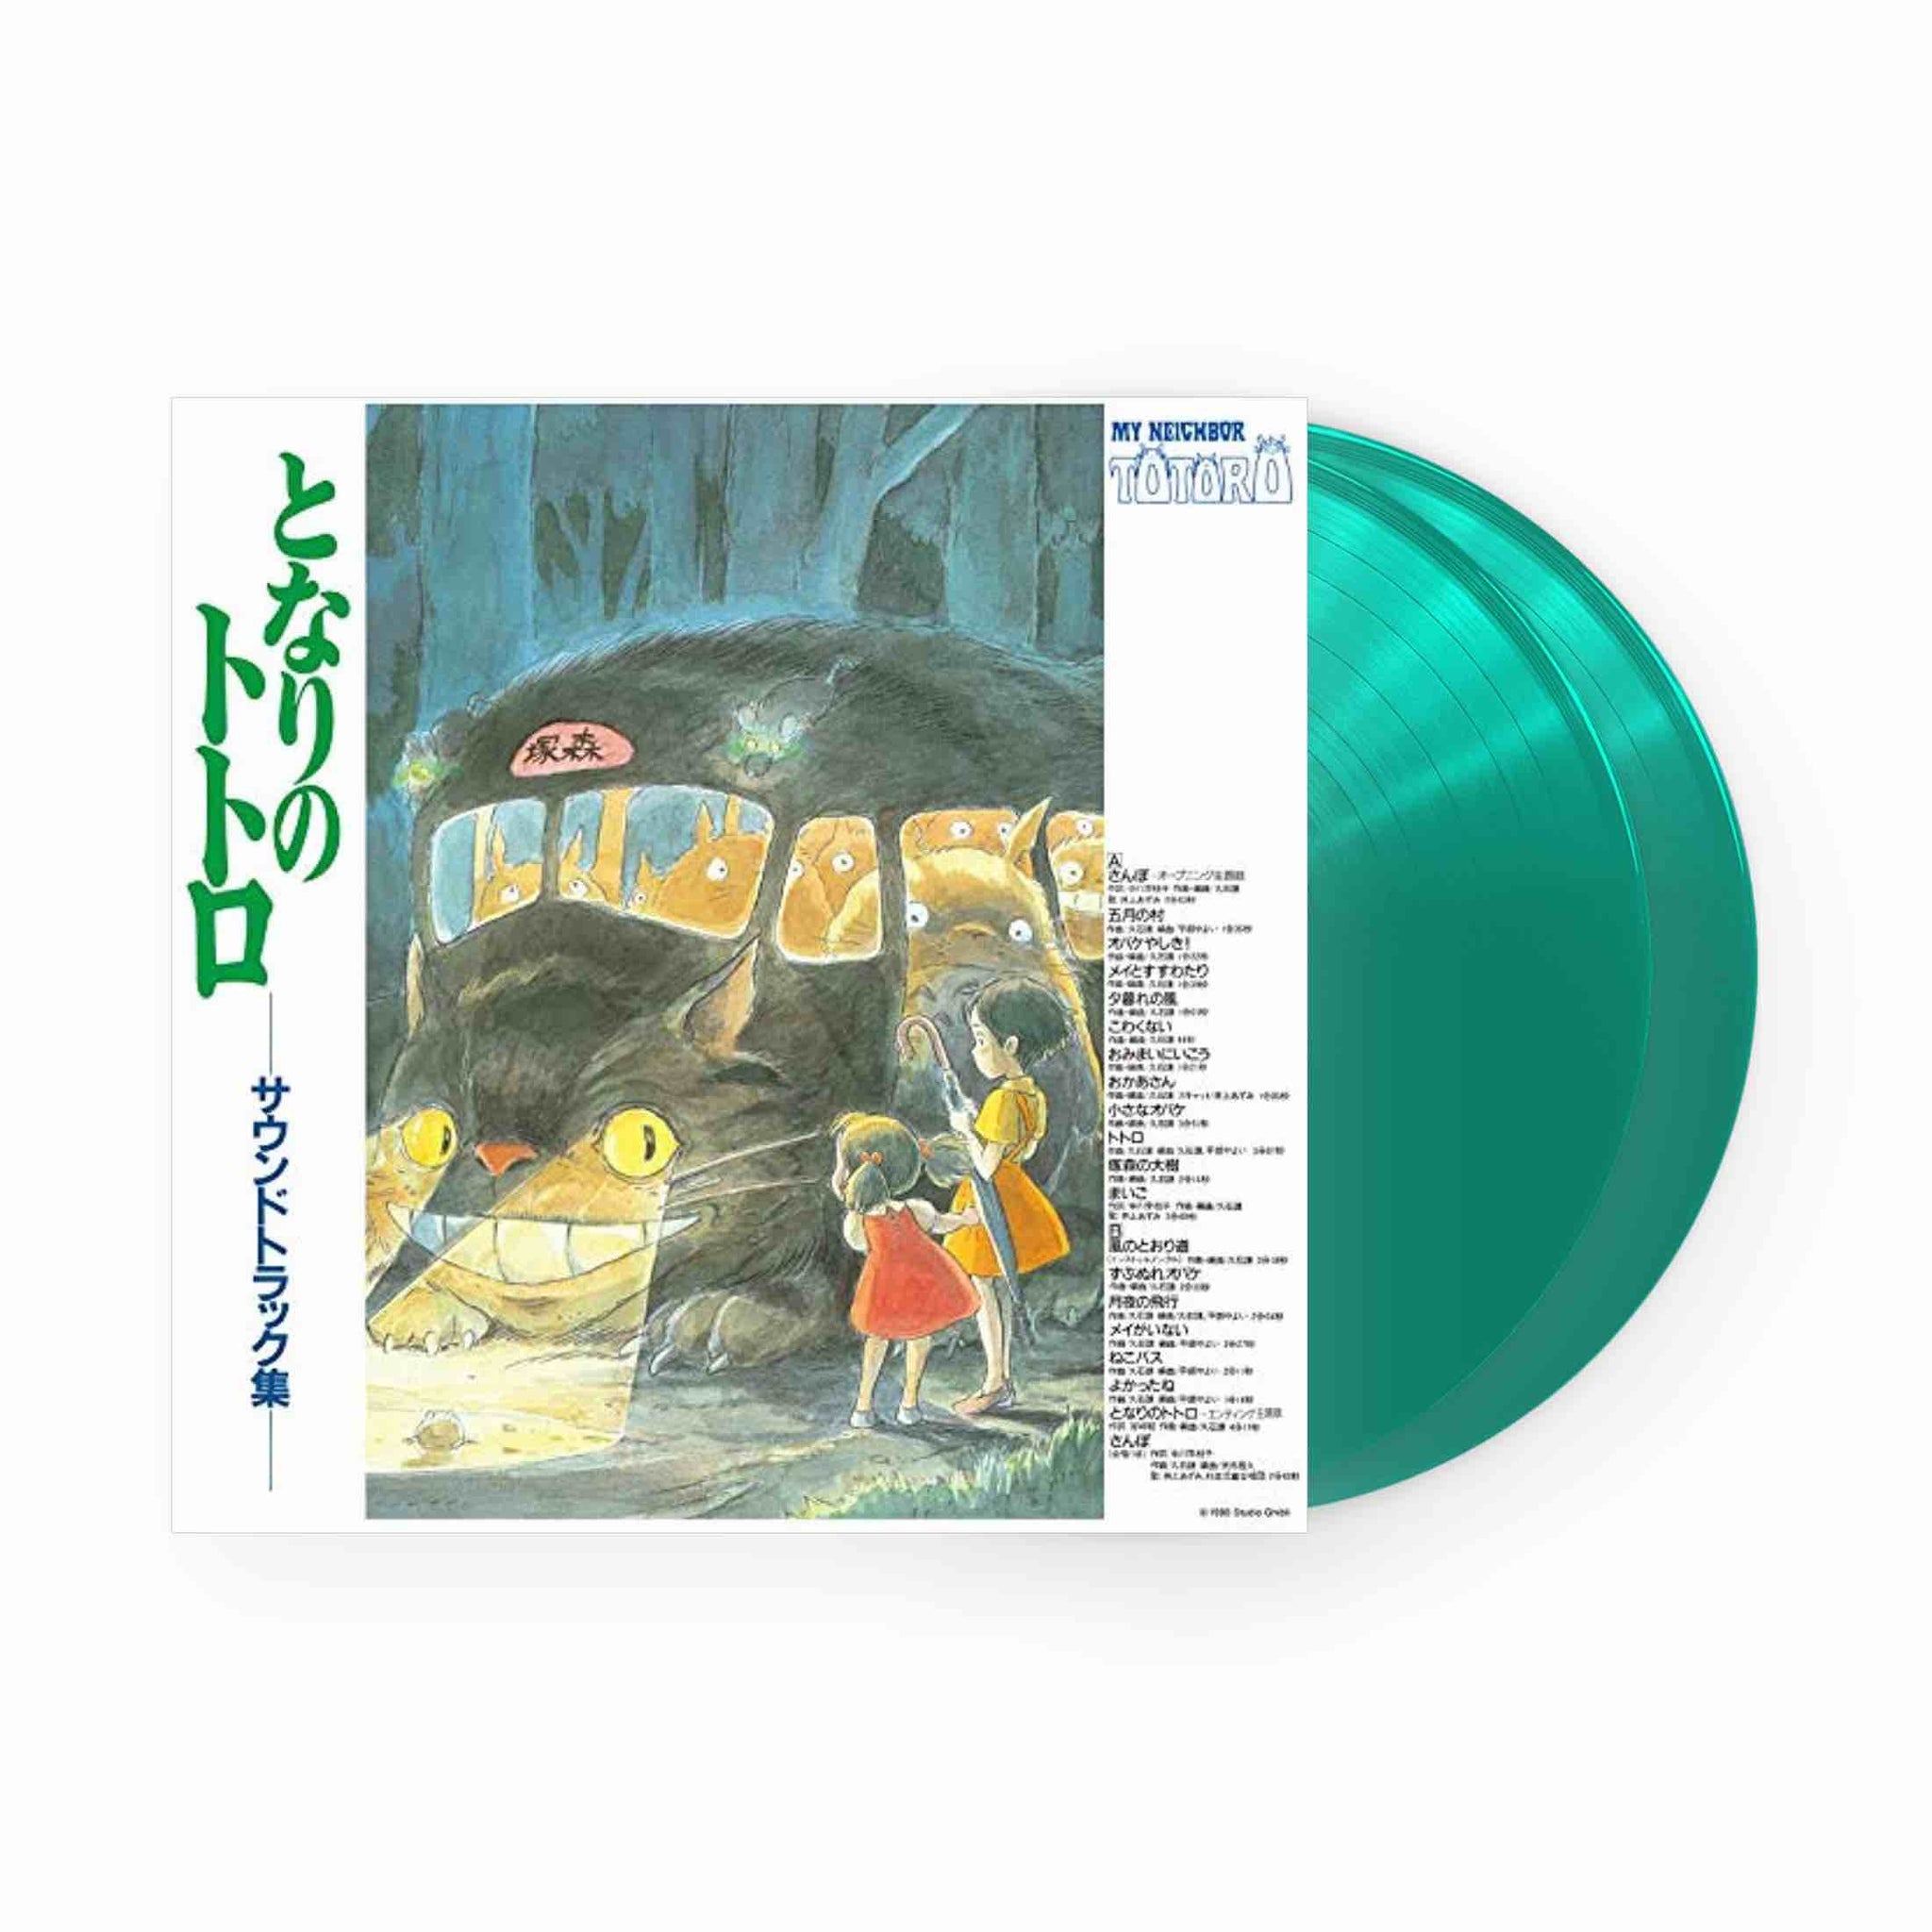 My Neighbour Totoro - Original Soundtrack LP (Teal Vinyl)